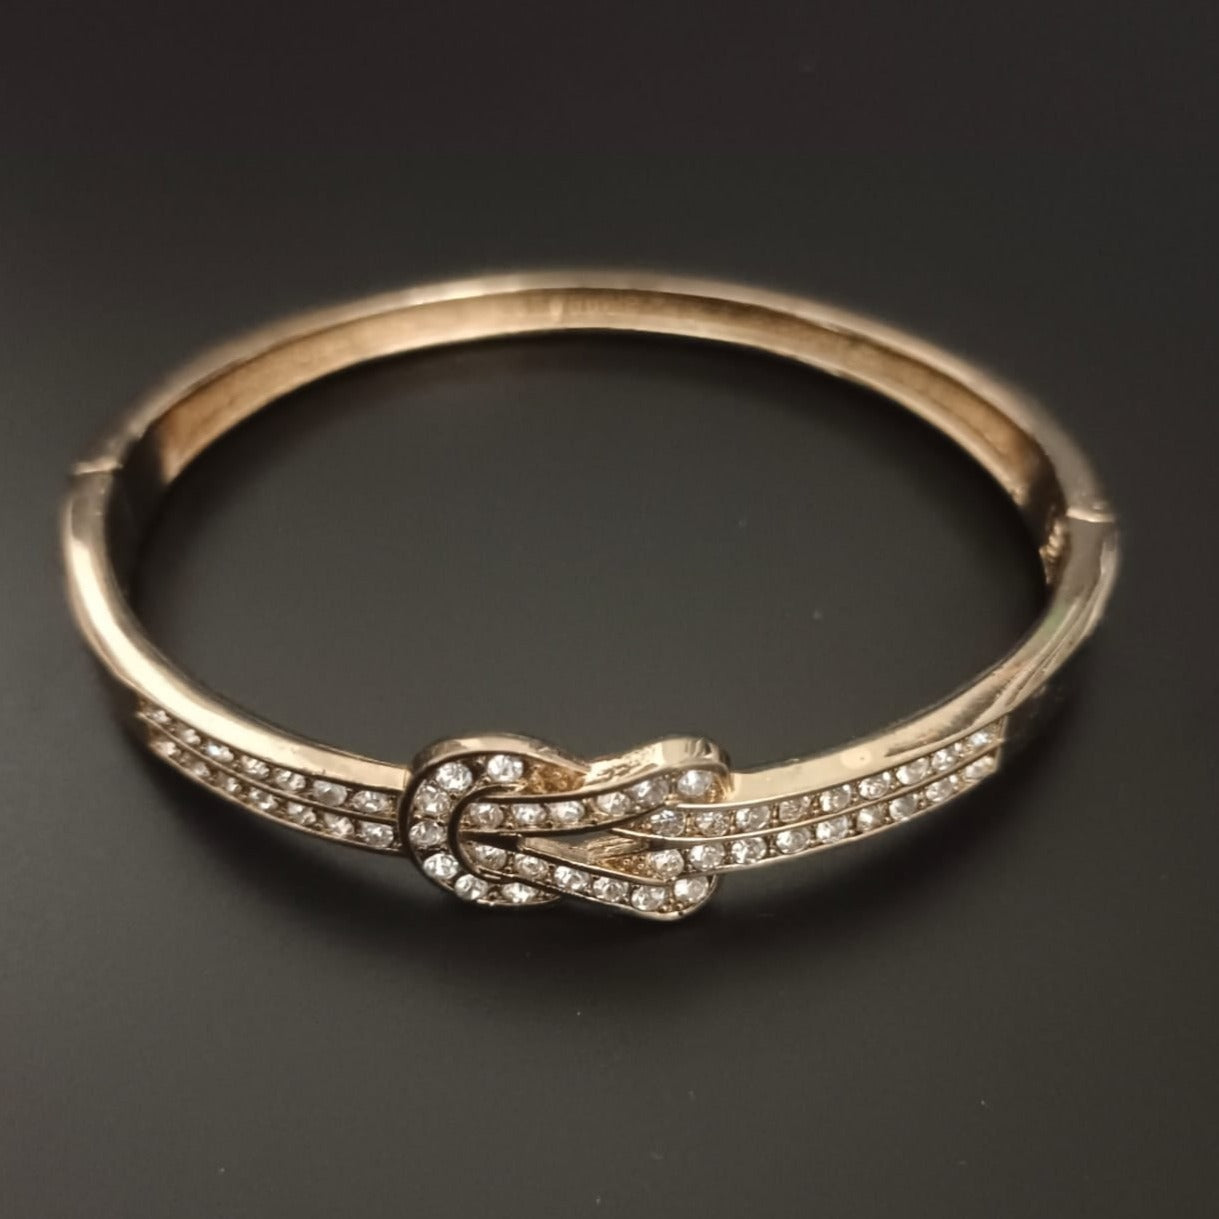 New Golden Knot Design Diamond Gold Bracelet For Women and Girl